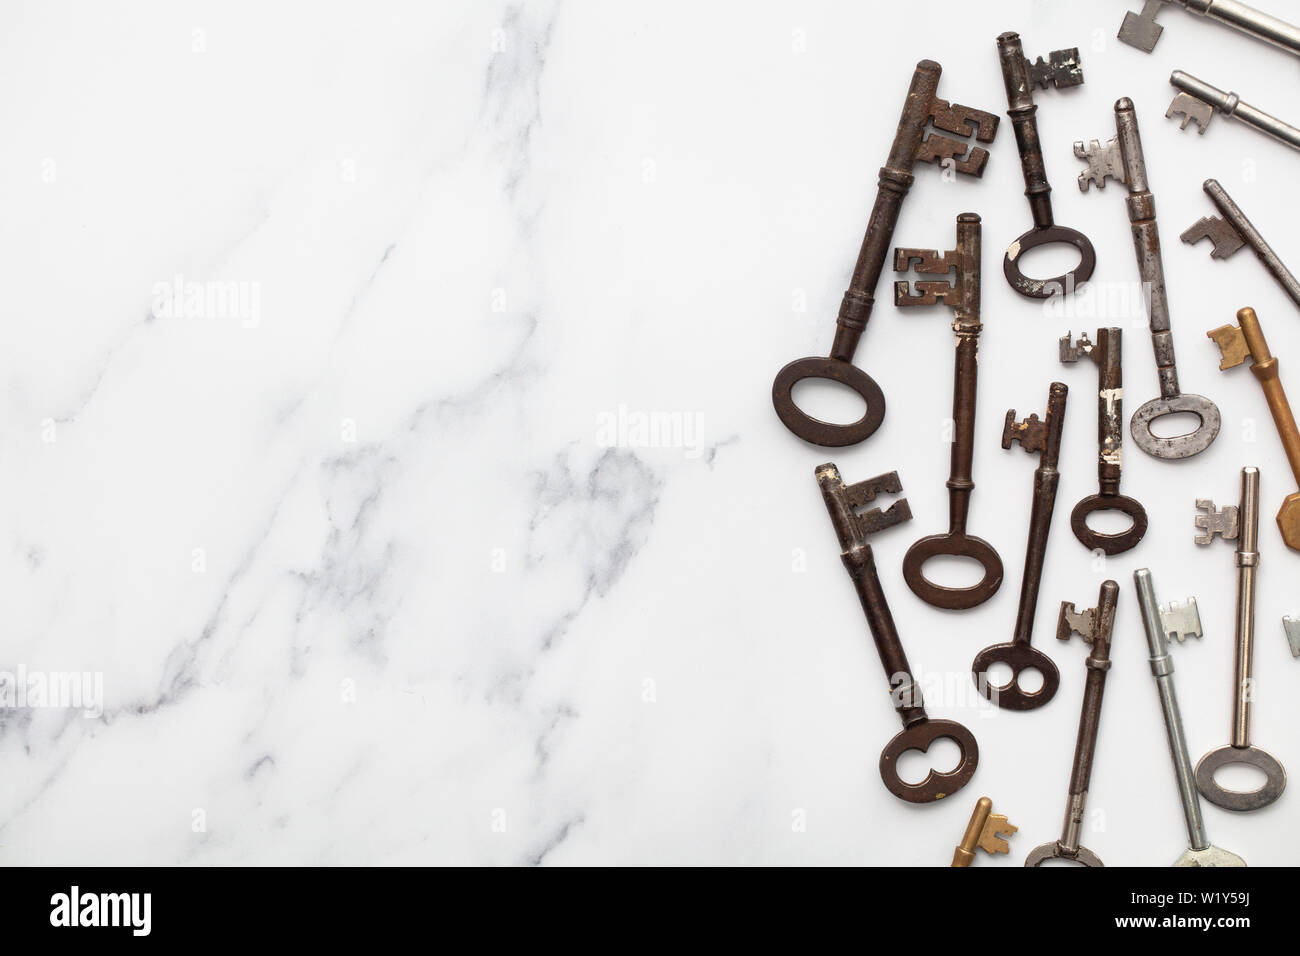 Vintage old fashioned keys sur un fond de marbre with copy space Banque D'Images